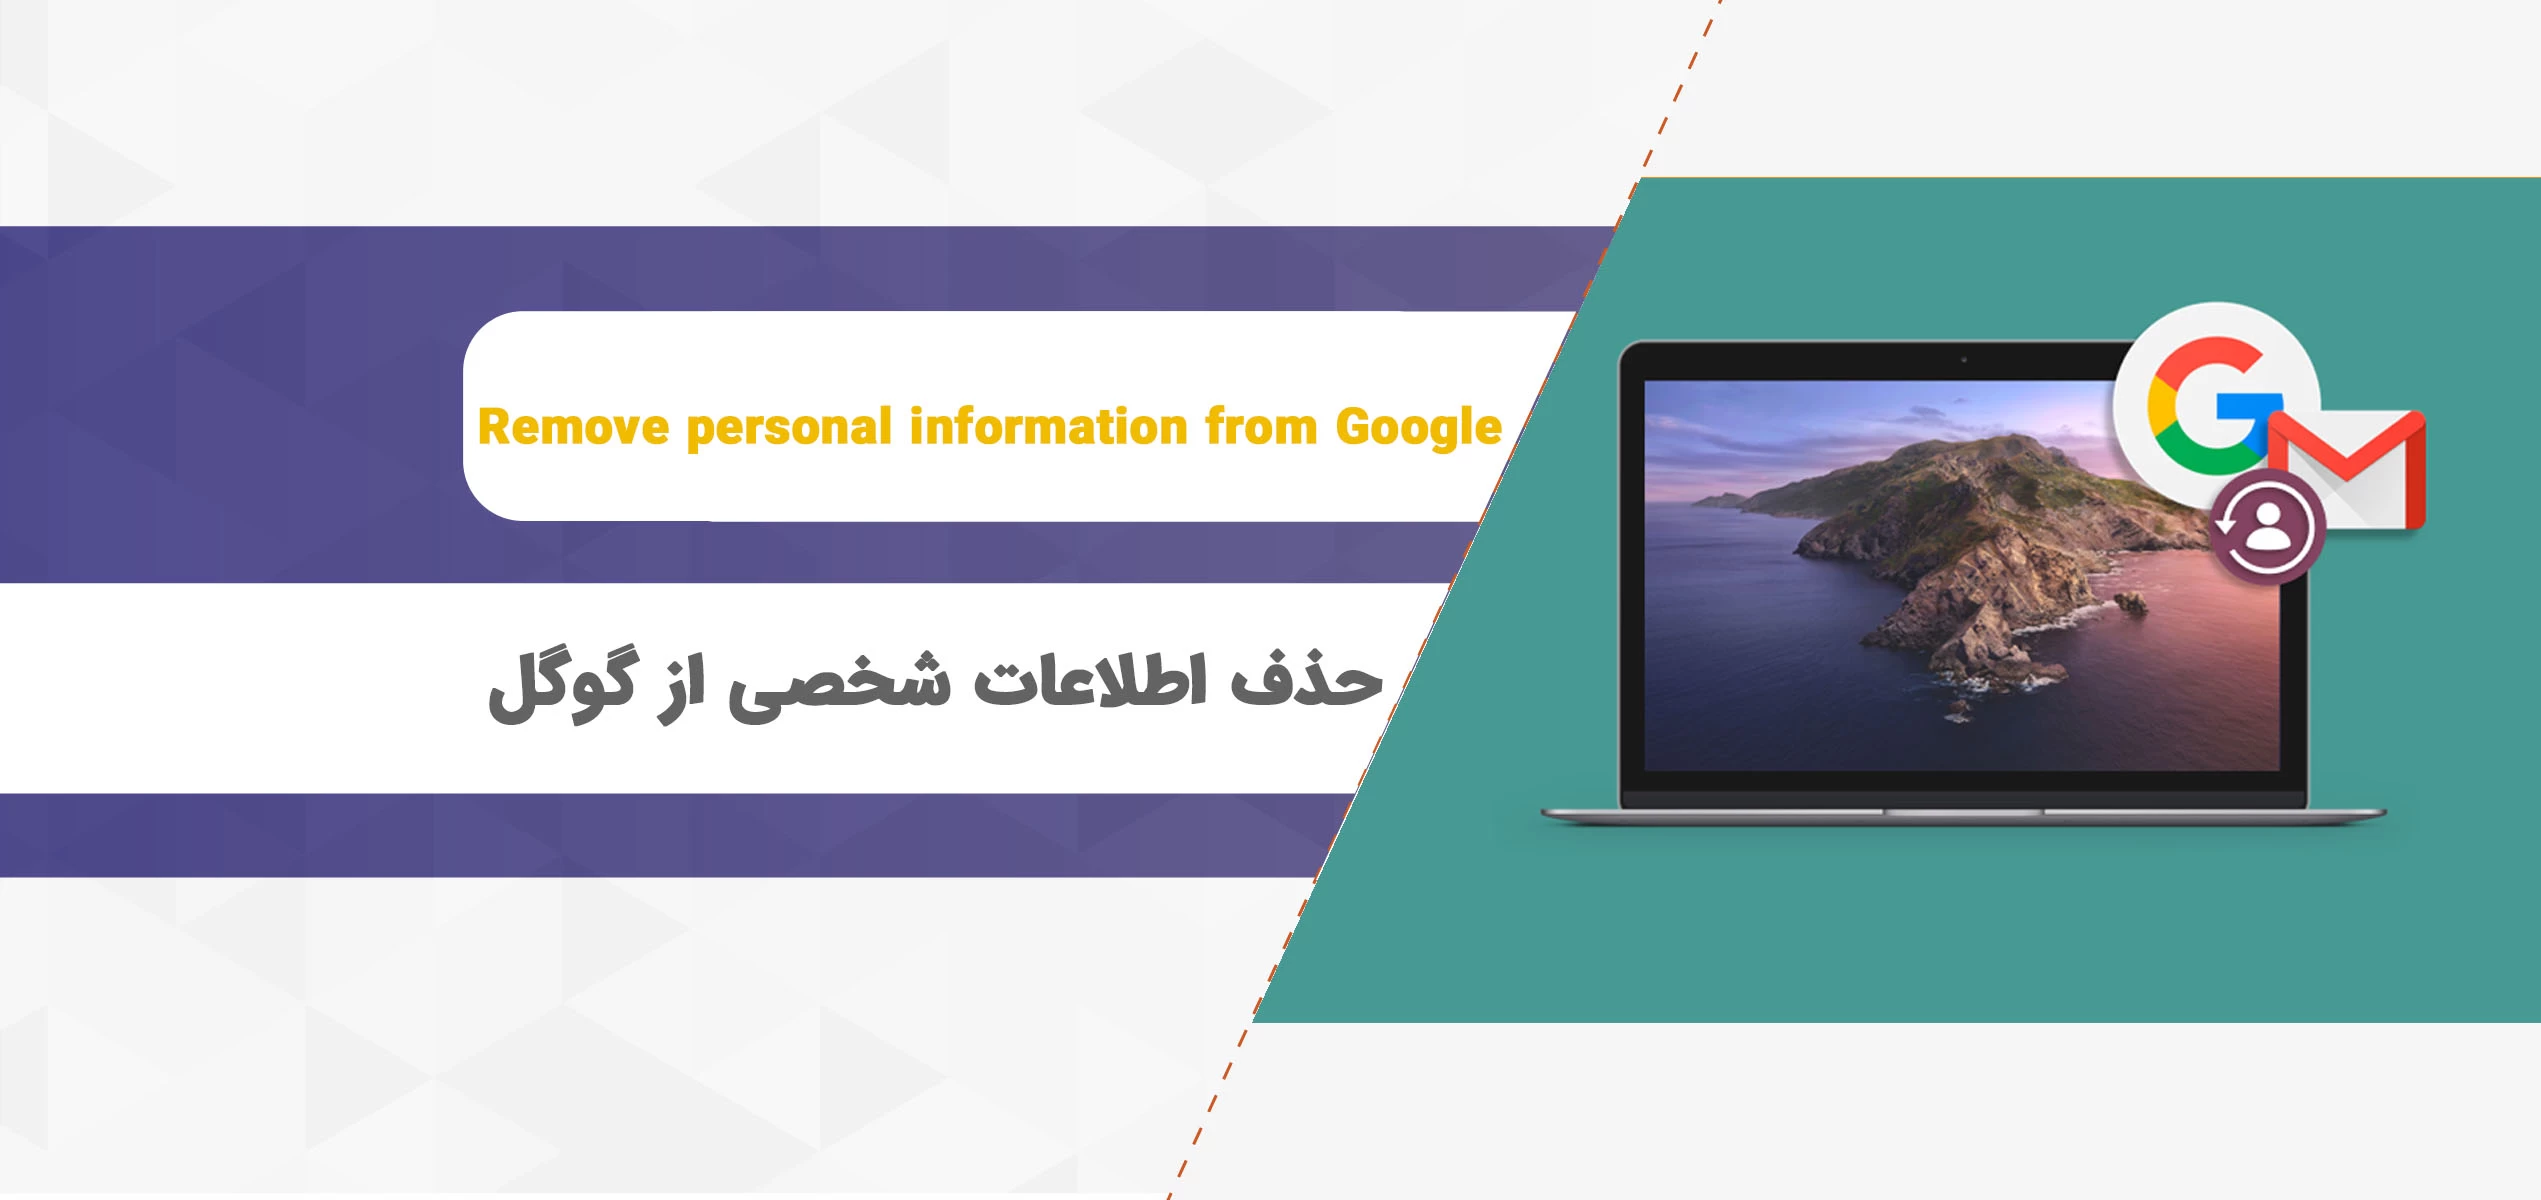 حذف اطلاعات شخصی از گوگل